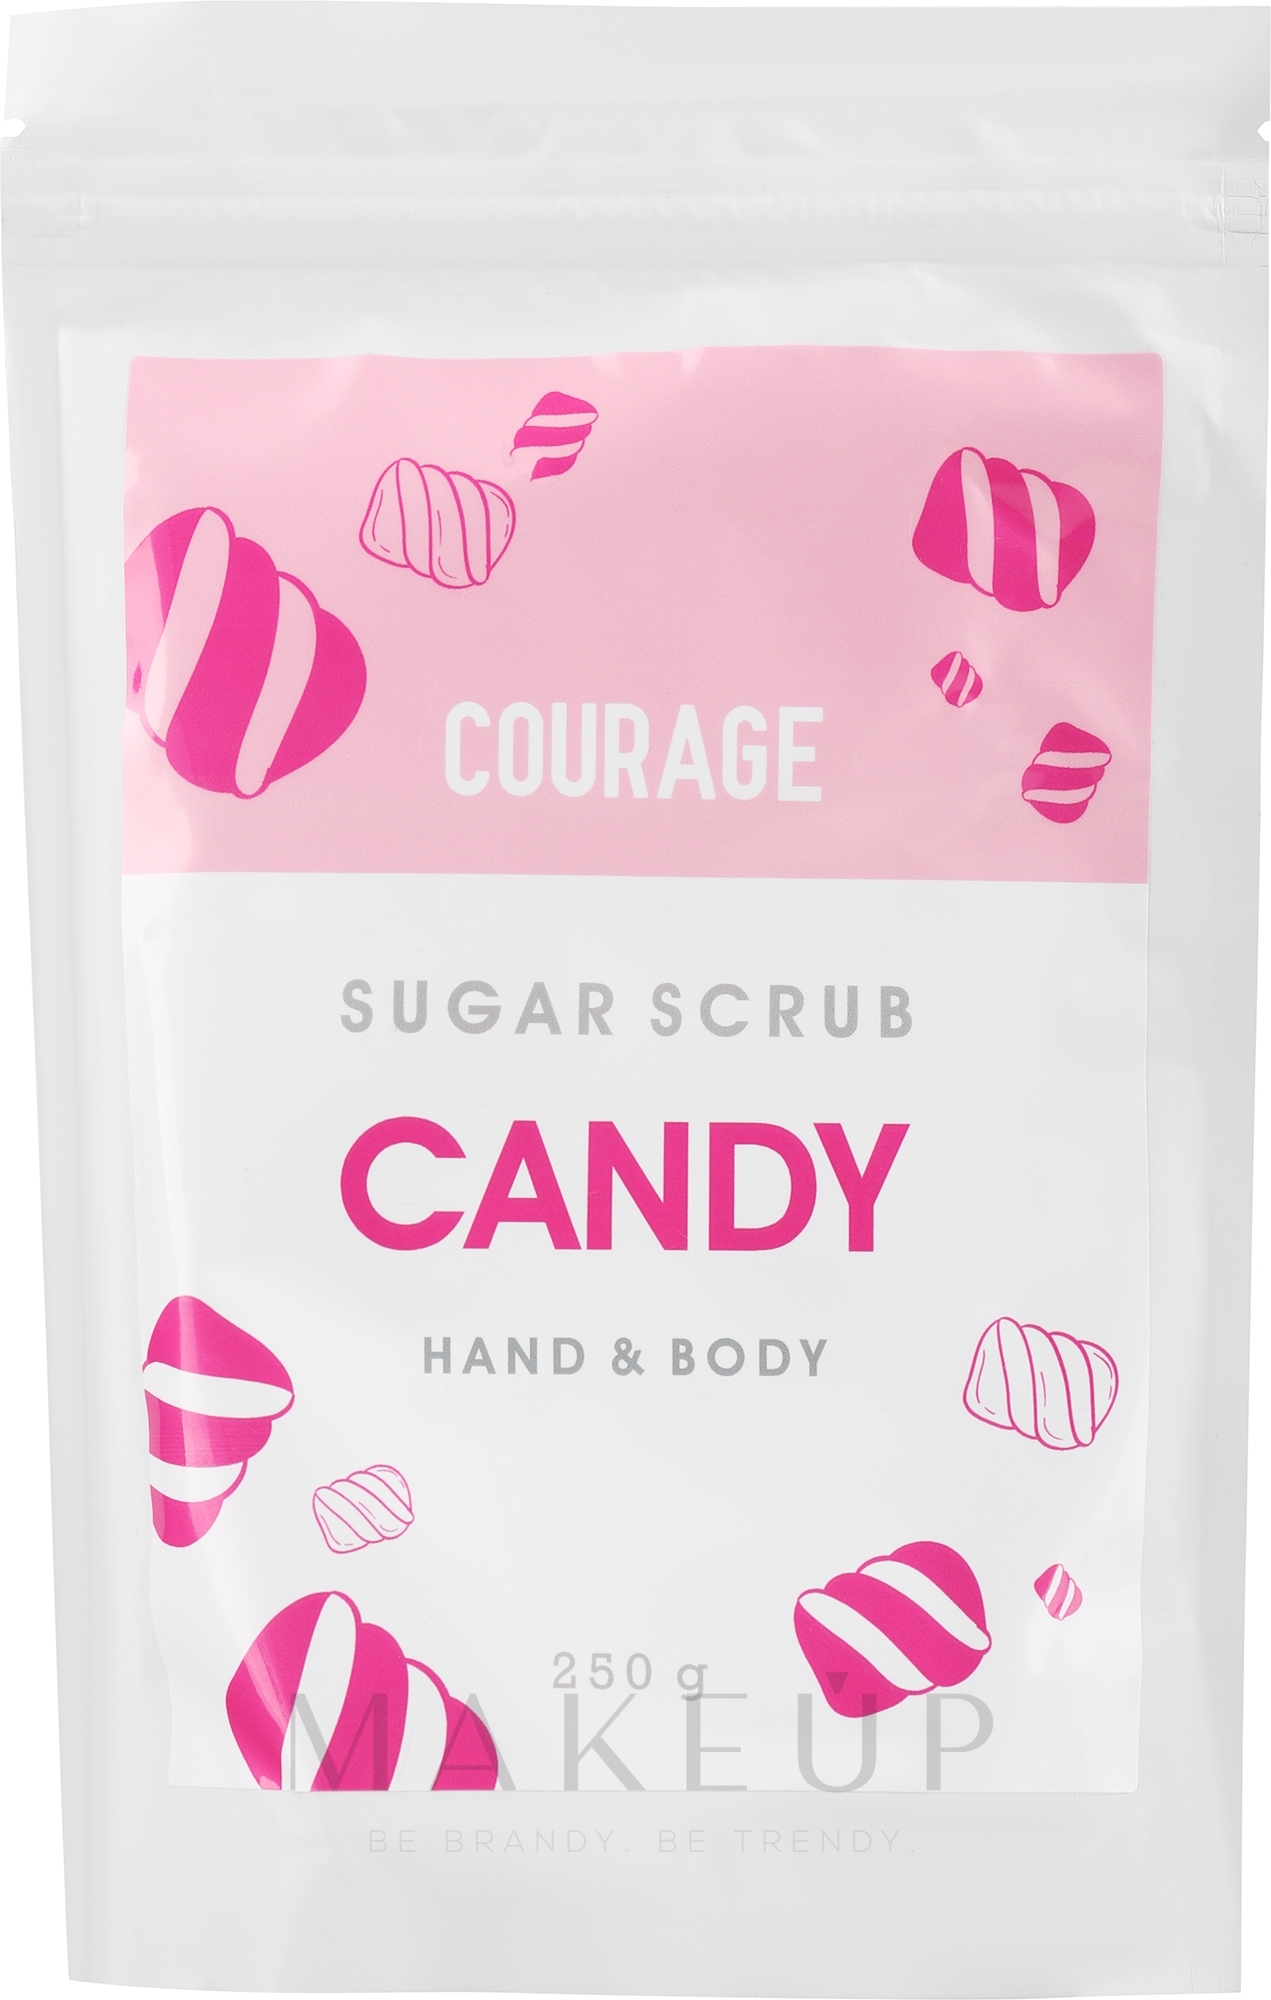 Zuckerpeeling für Hände und Körper Candy - Courage Candy Hands & Body Sugar Scrub (Probe) — Bild 250 g